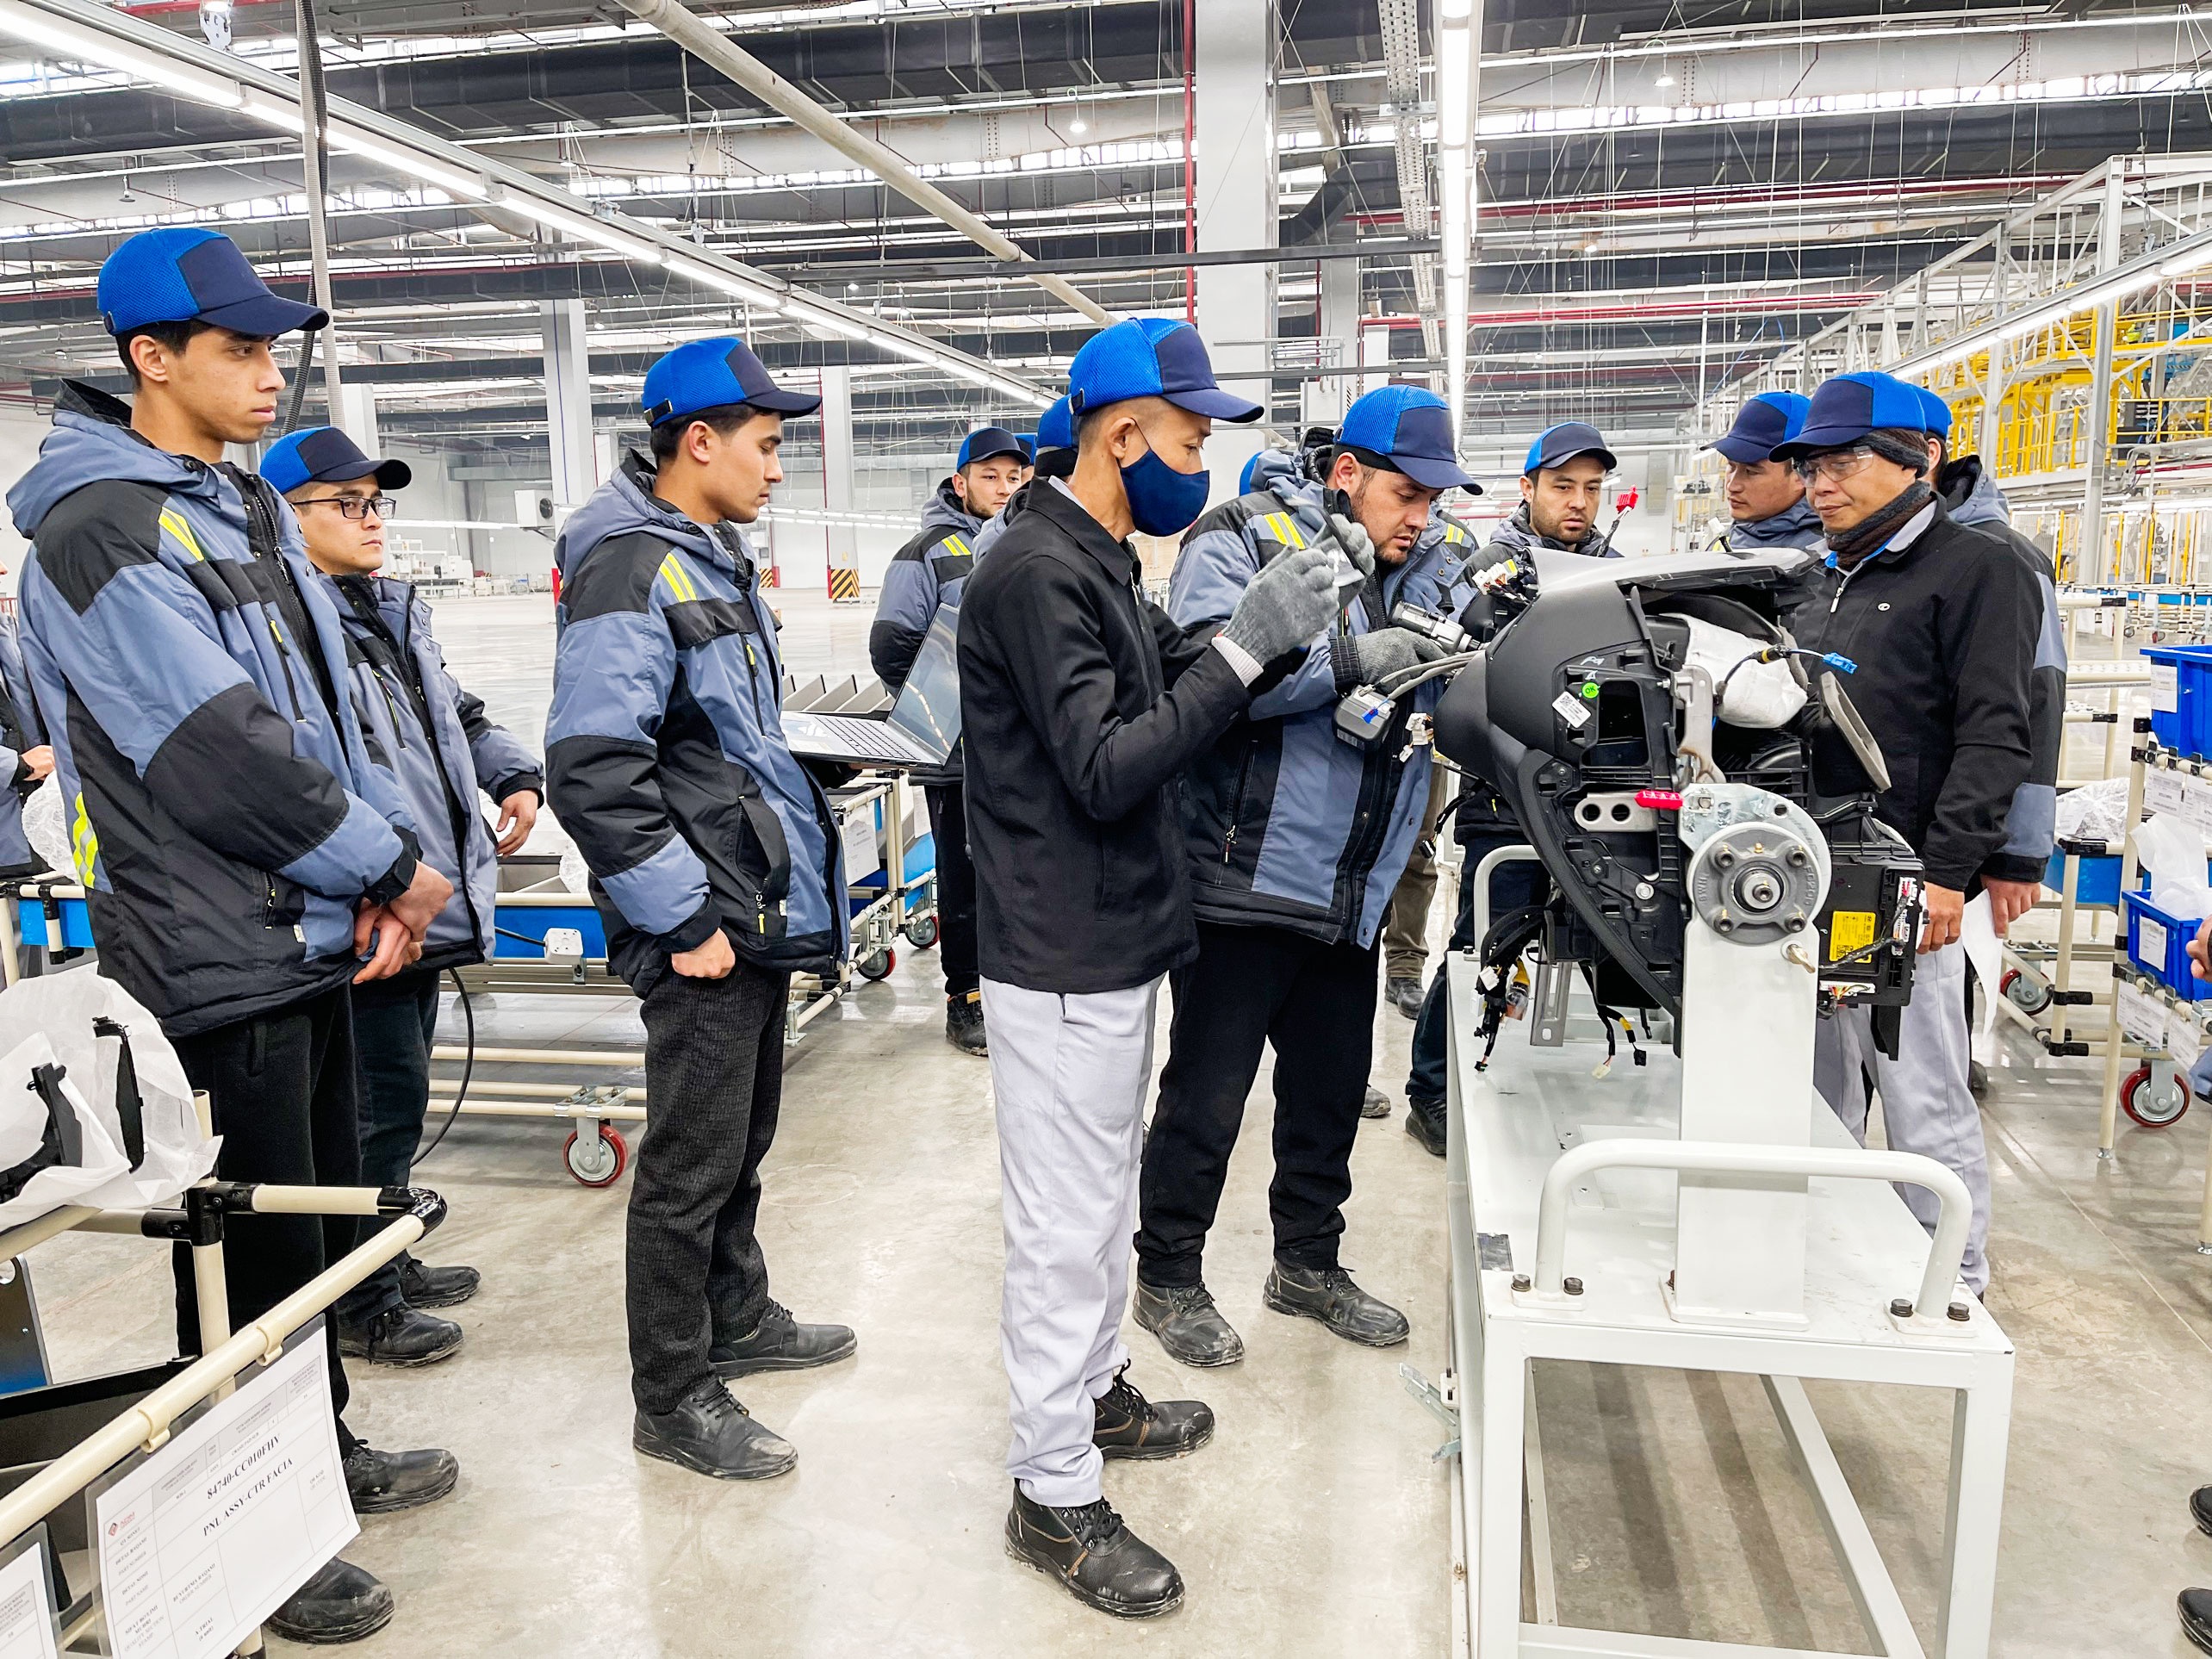 Nhà máy Thaco Kia tham gia giám sát sản xuất Kia Sonet tại Uzbekistan - ảnh 6